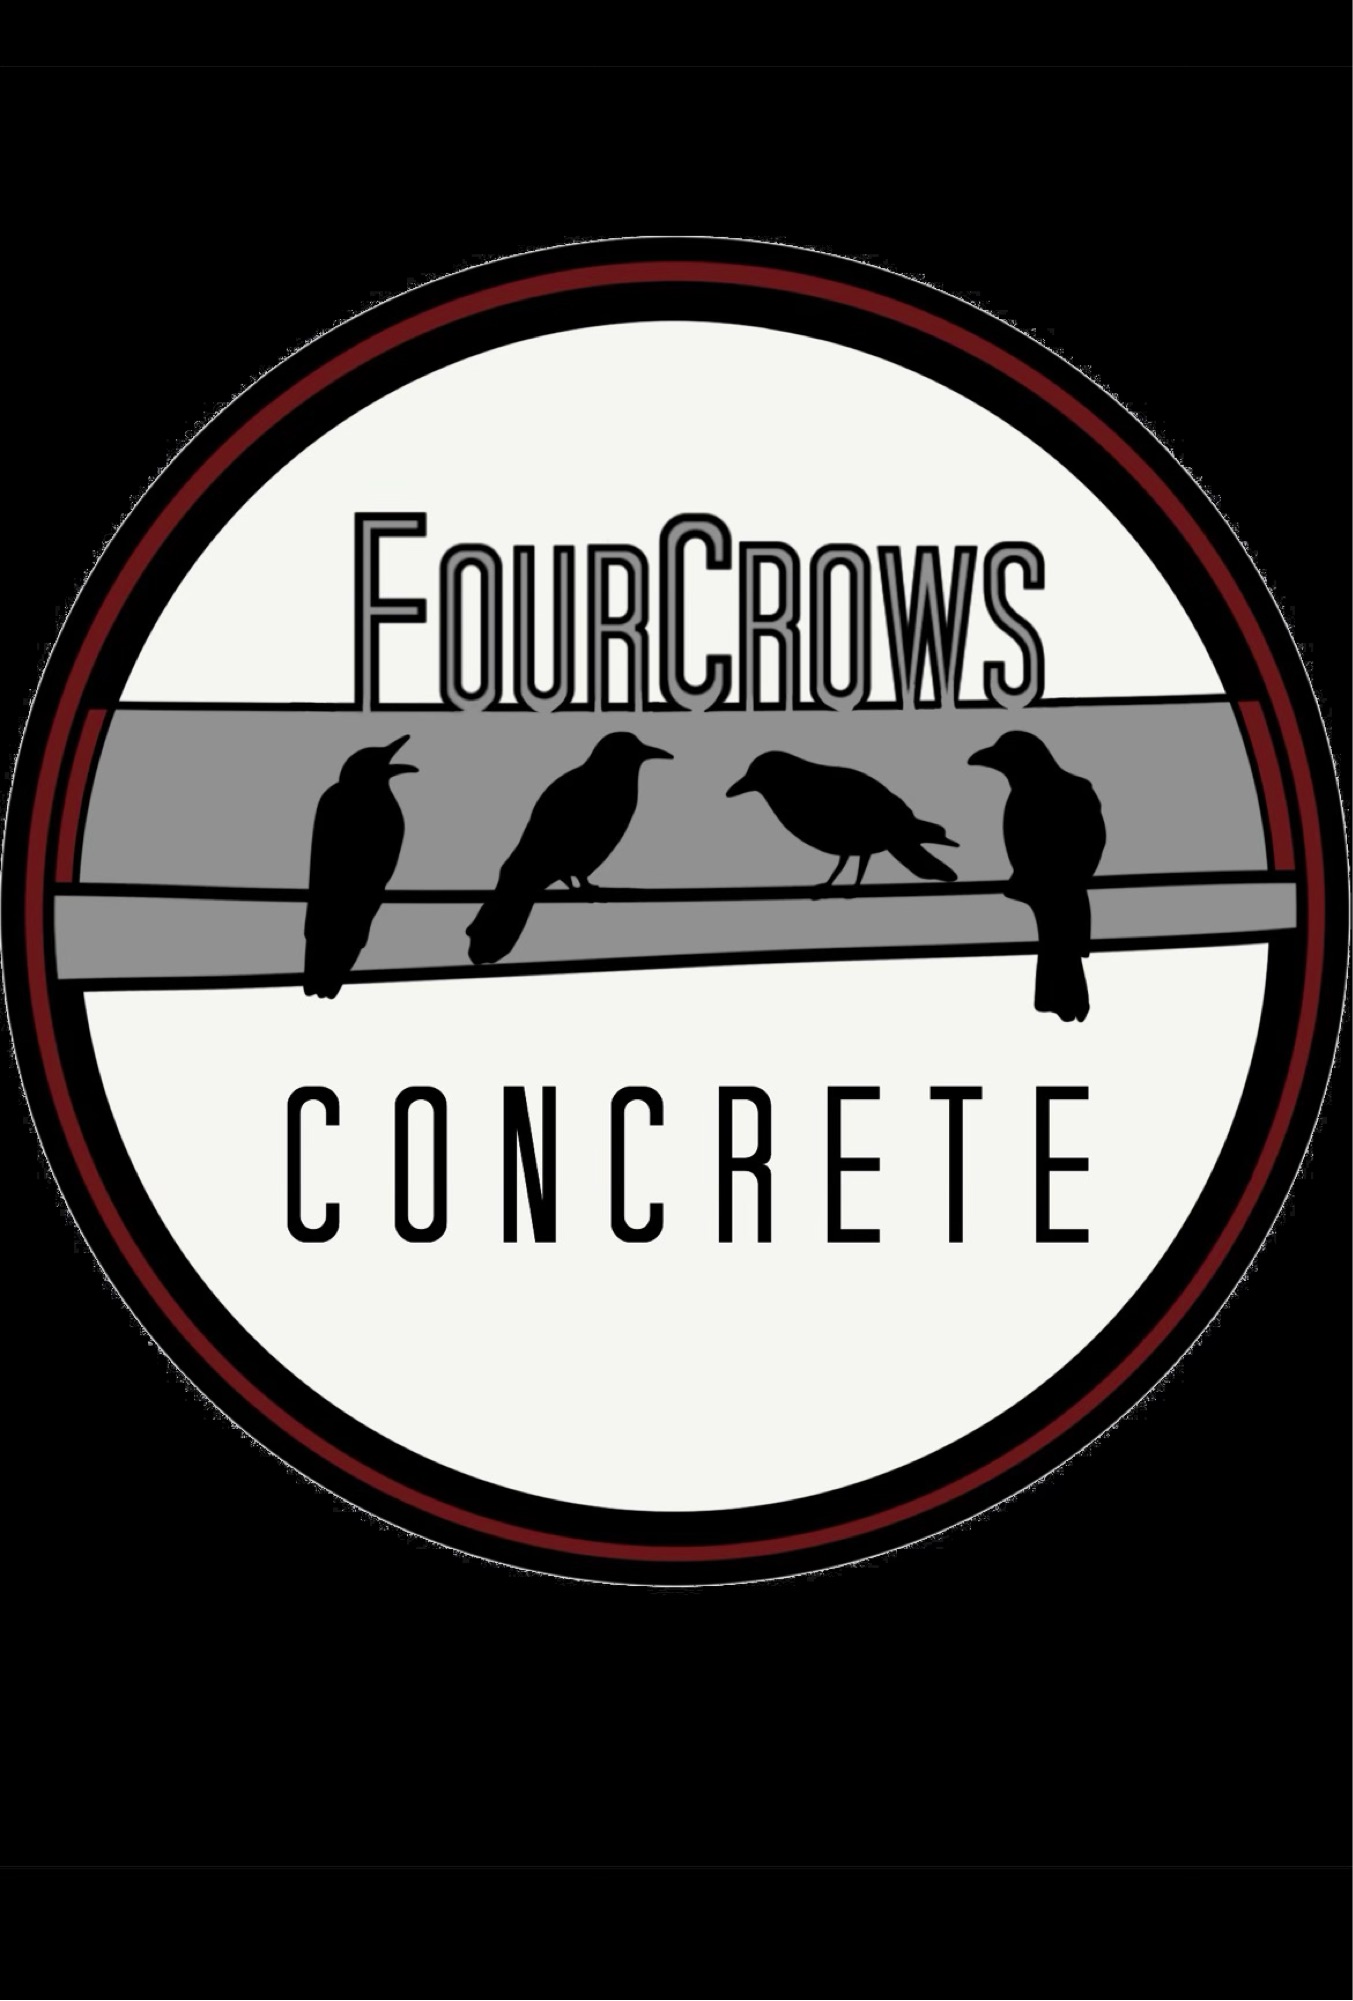 Fourcrows Concrete Logo